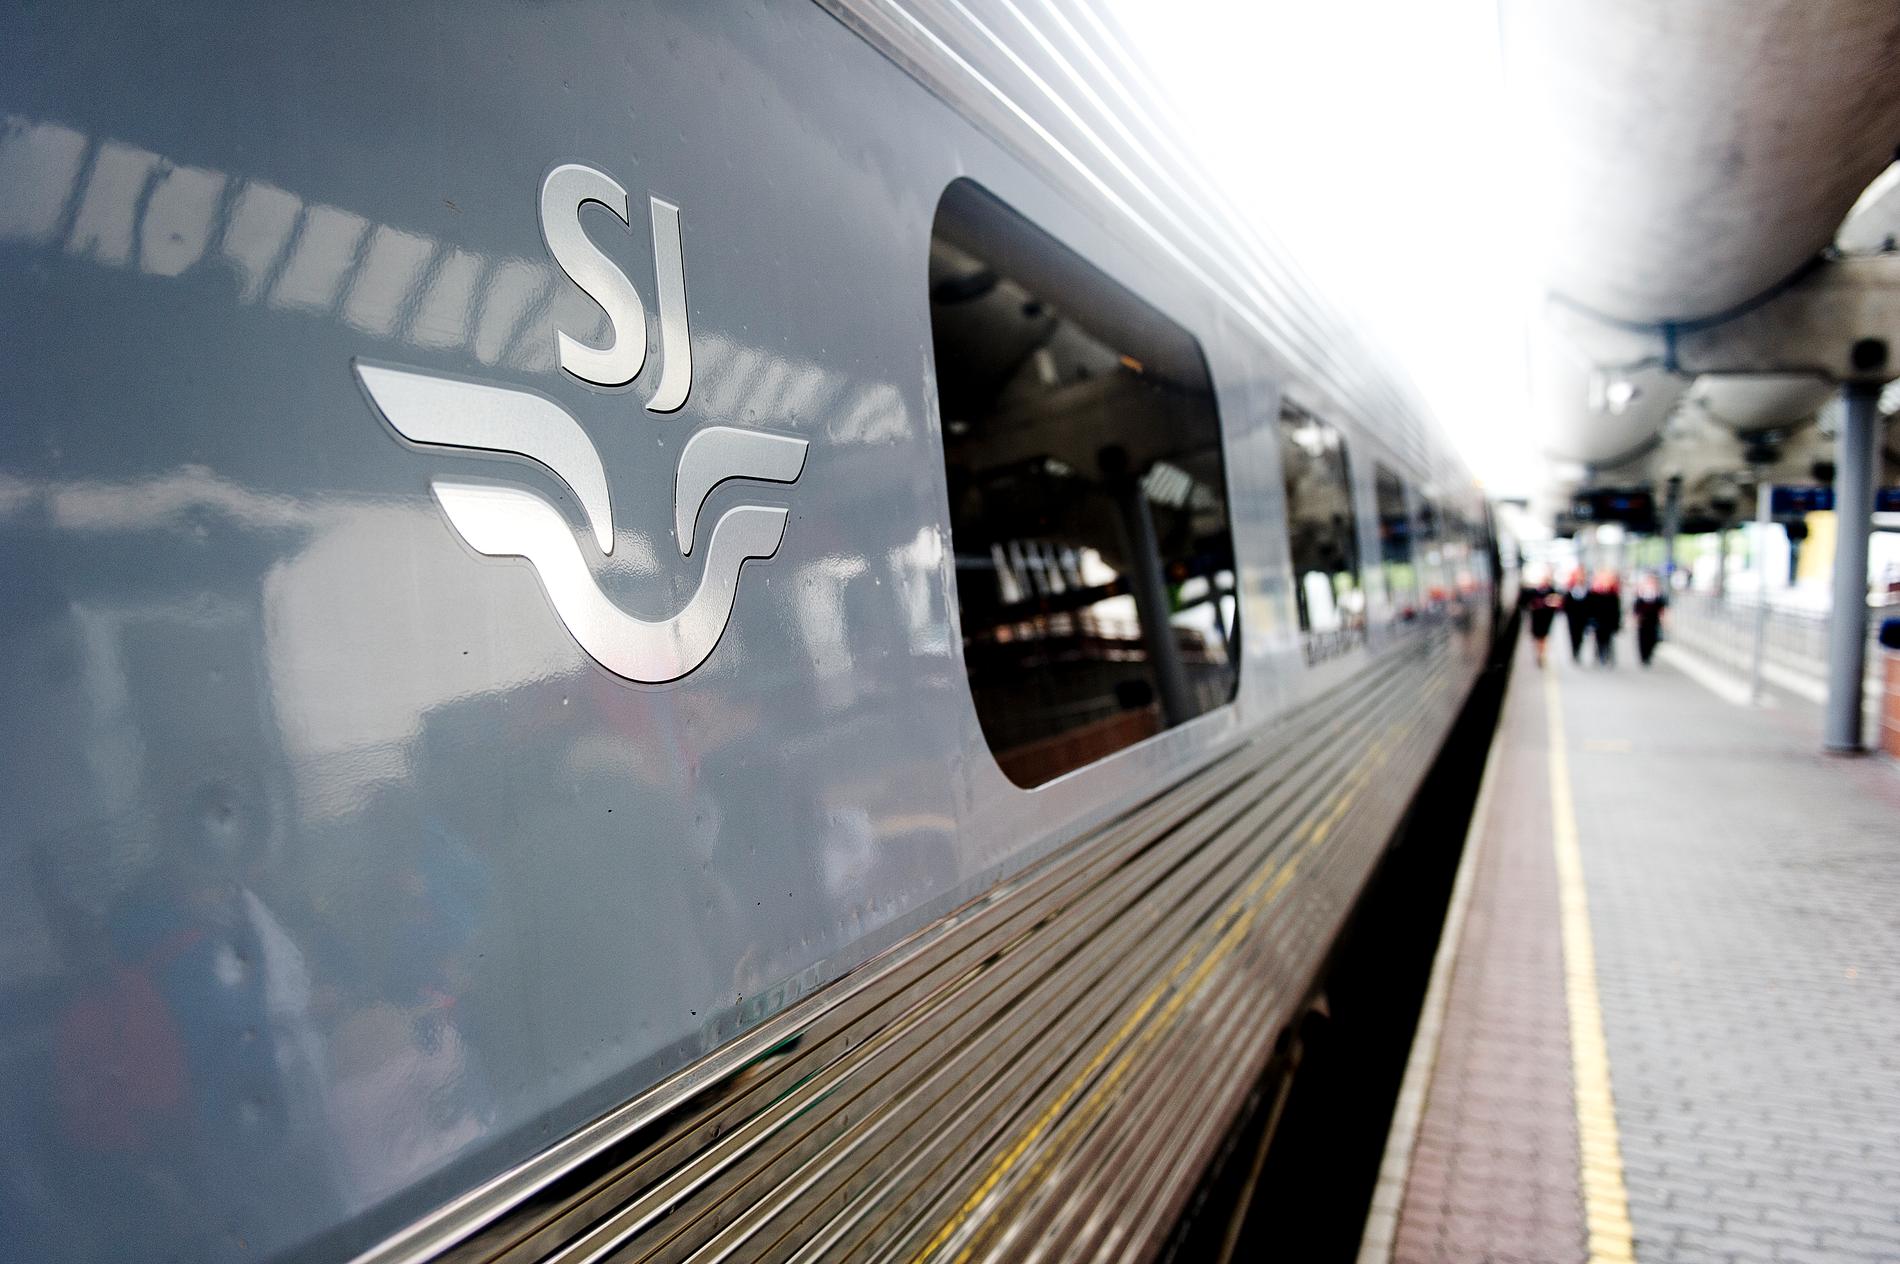 Svenske SJ har vunnet anbudet om togtrafikken i den såkalte trafikkpakke nord. Foto: Jon Olav Nesvold / NTB scanpix.